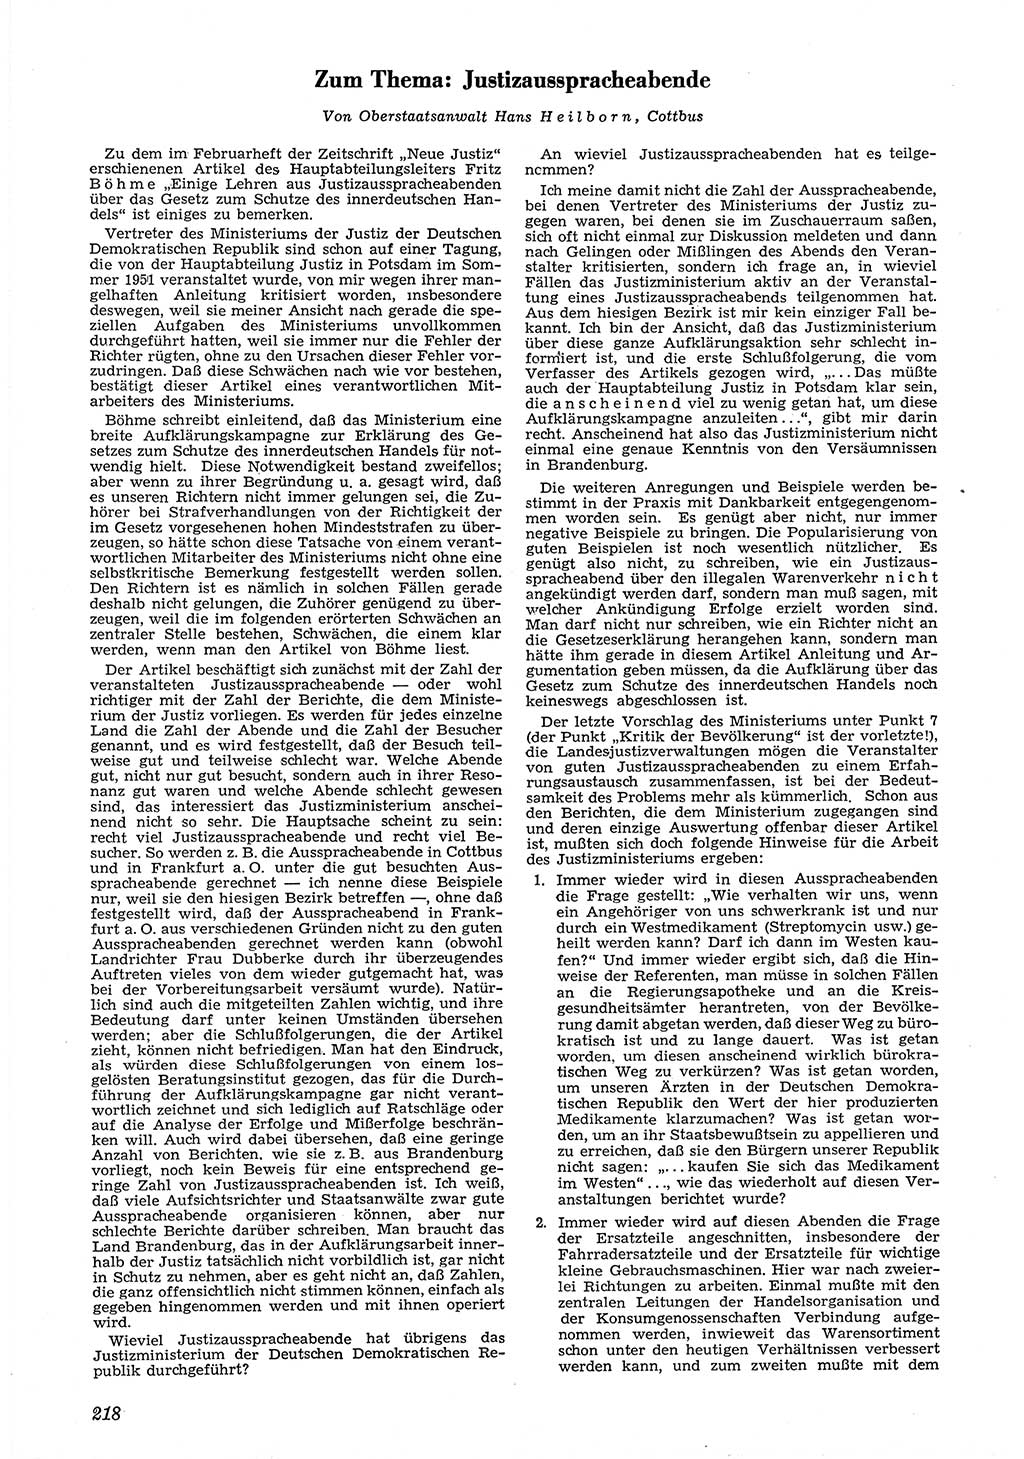 Neue Justiz (NJ), Zeitschrift für Recht und Rechtswissenschaft [Deutsche Demokratische Republik (DDR)], 6. Jahrgang 1952, Seite 218 (NJ DDR 1952, S. 218)